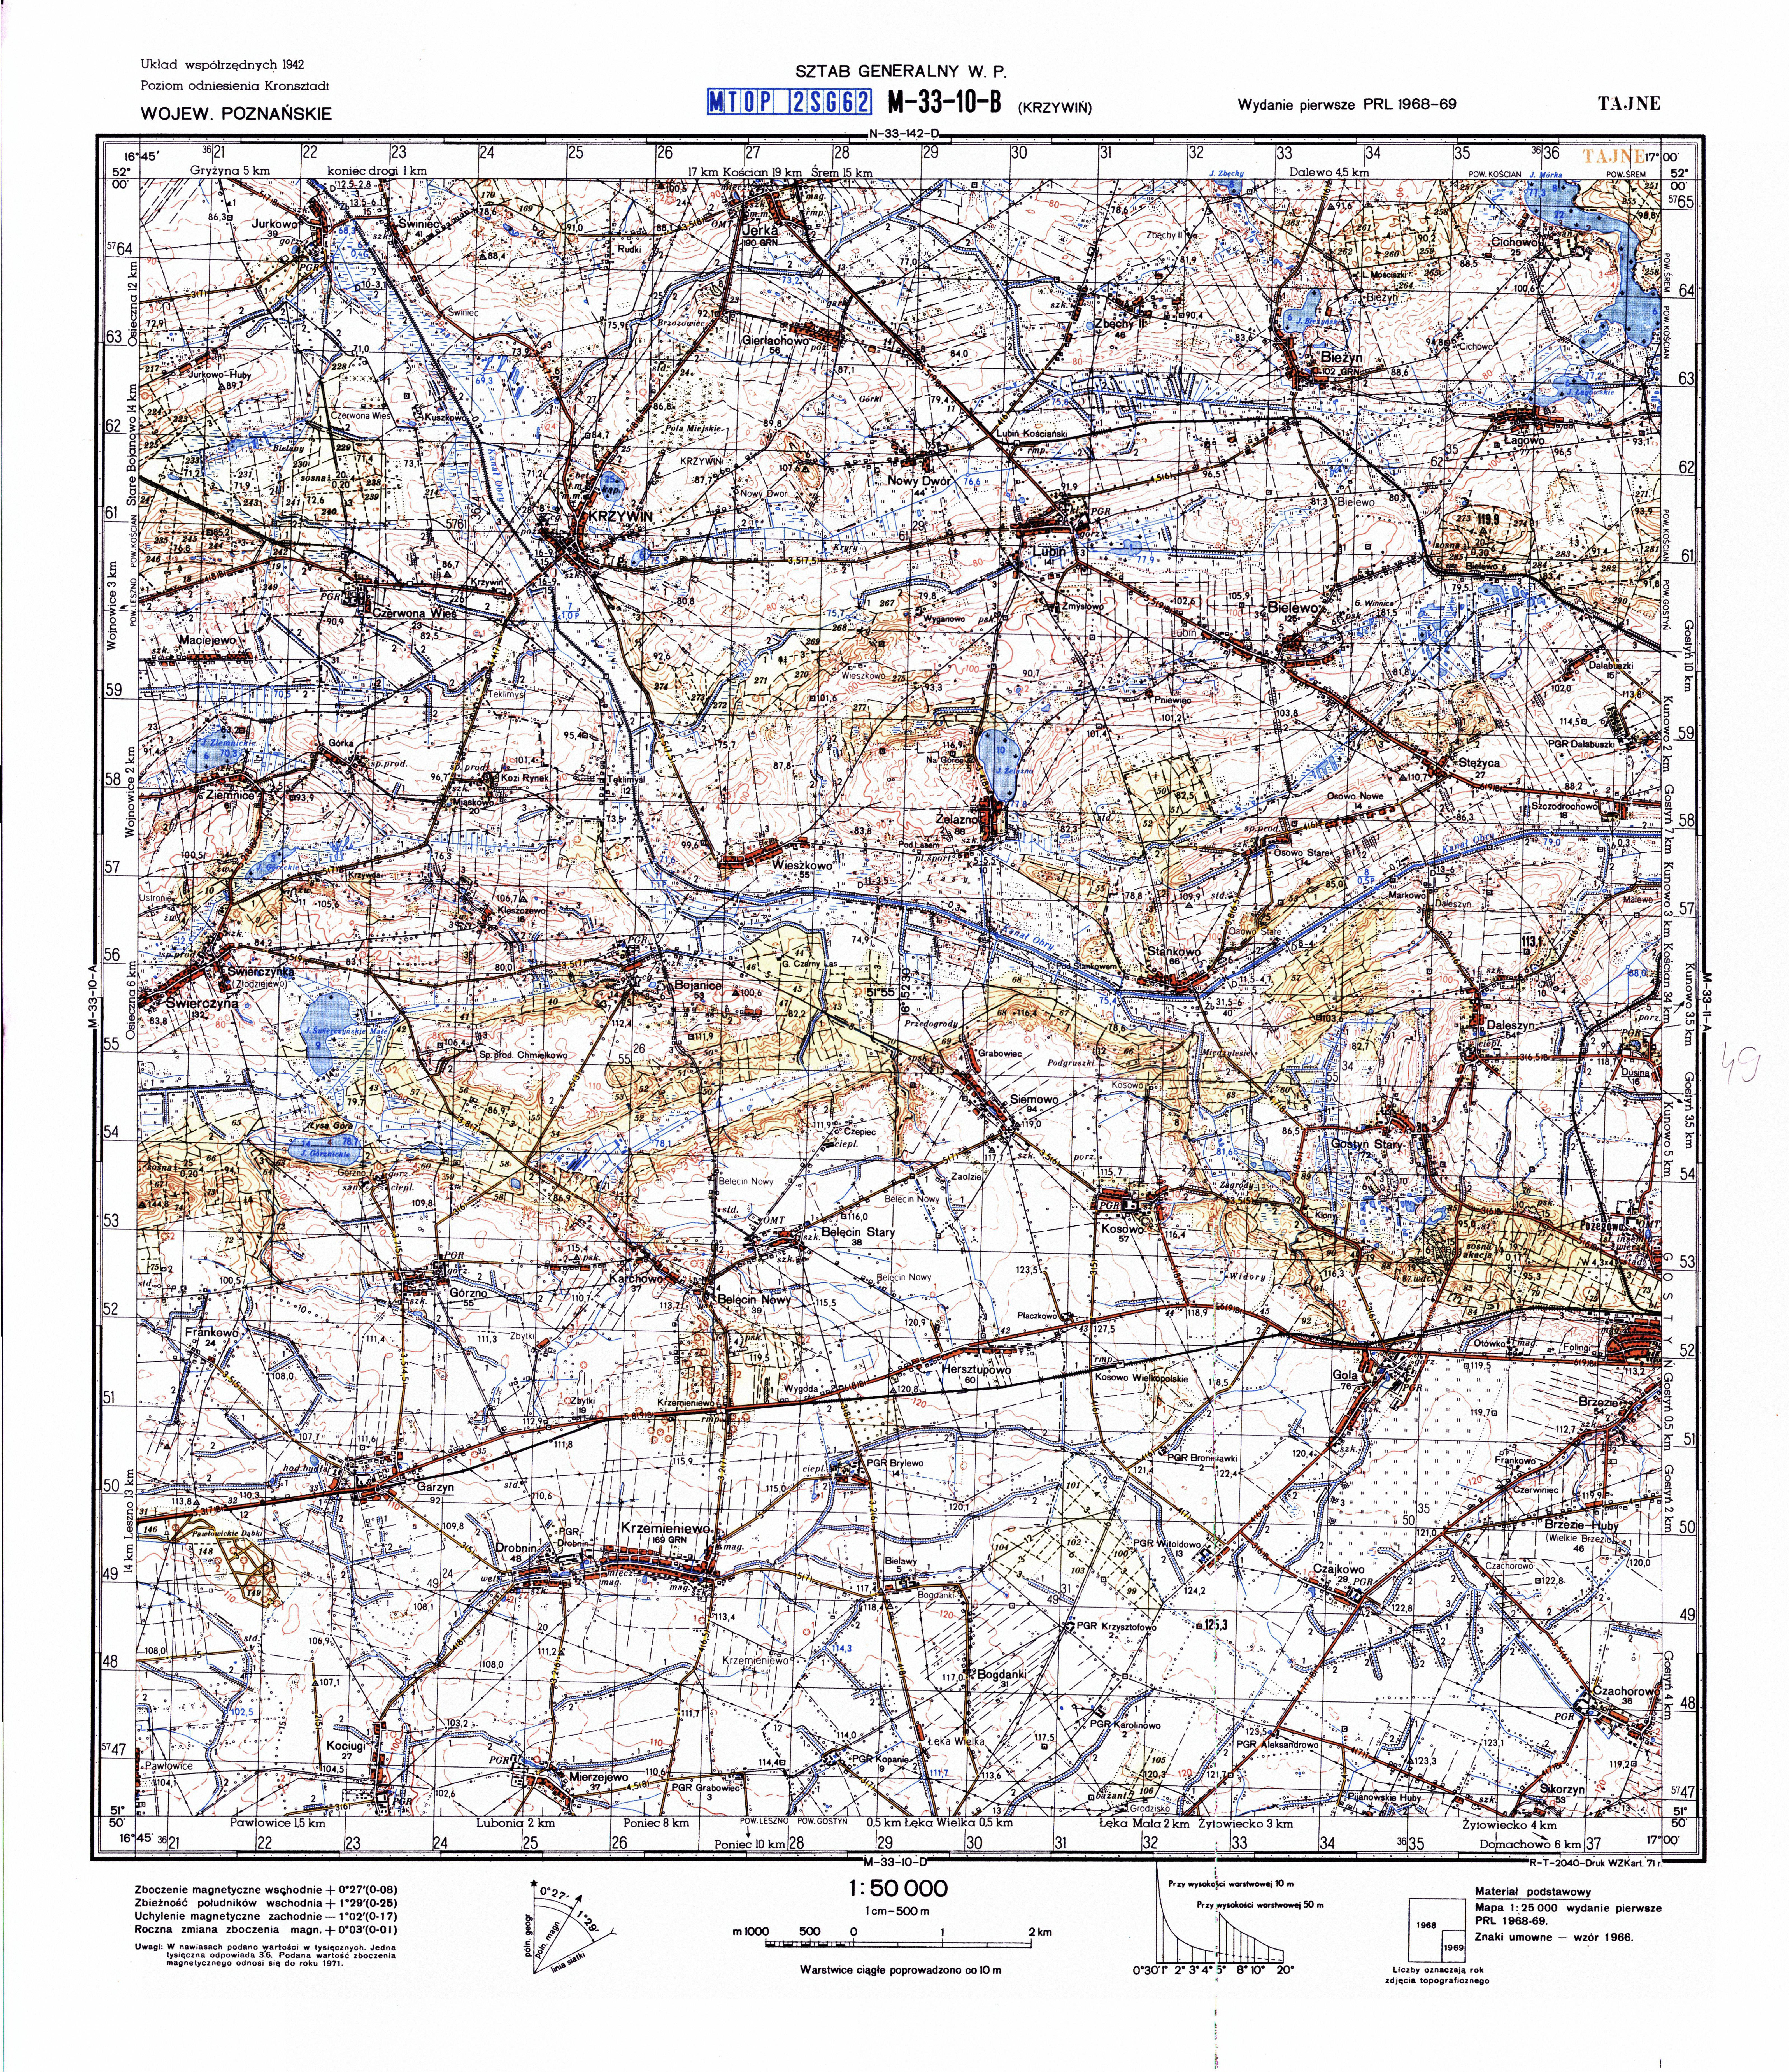 Mapy topograficzne LWP 1_50 000 - M-33-10-B_KRZYWIN_1971.jpg